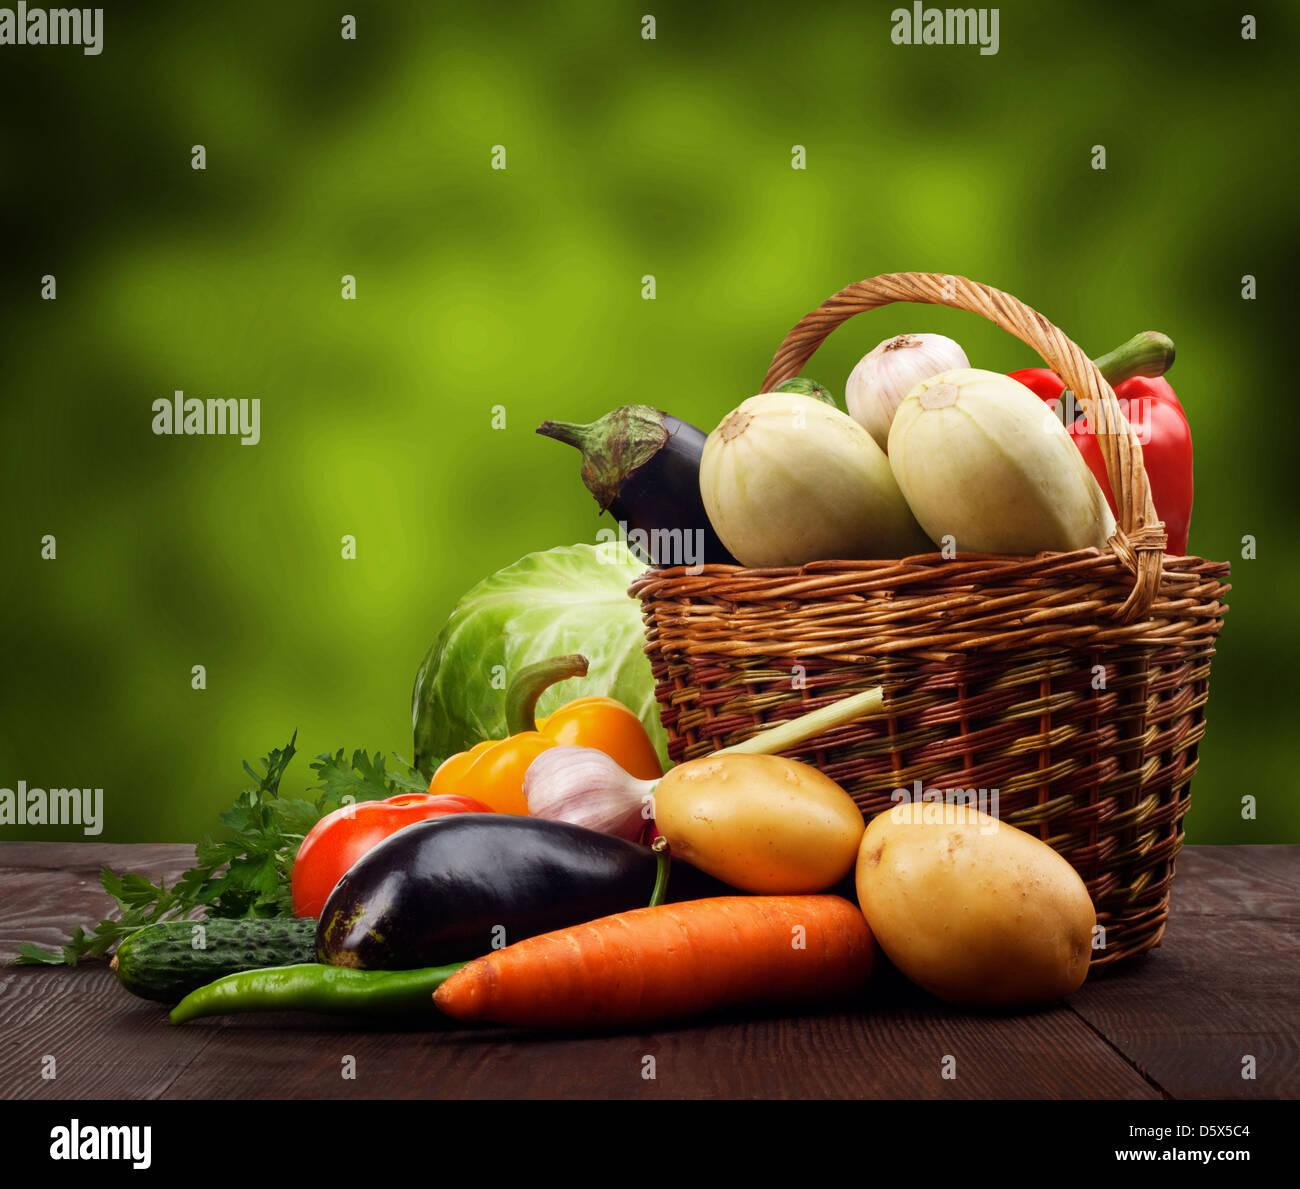 Les légumes frais mûrs dans un panier sur la table en bois Banque D'Images